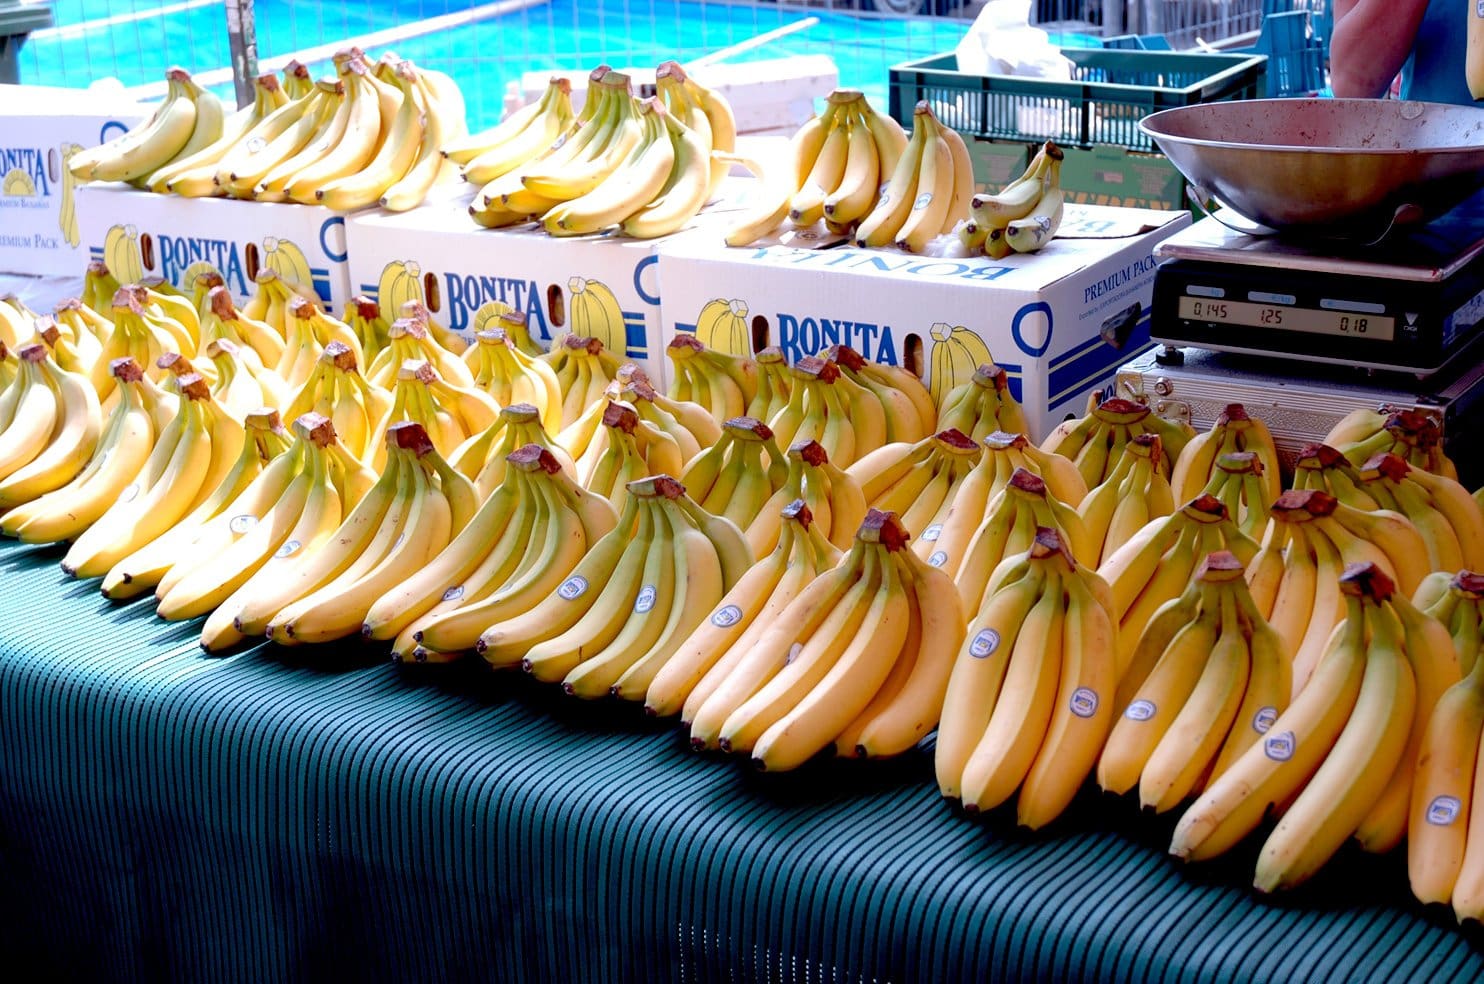 Batata e banana registram queda de preços no atacado